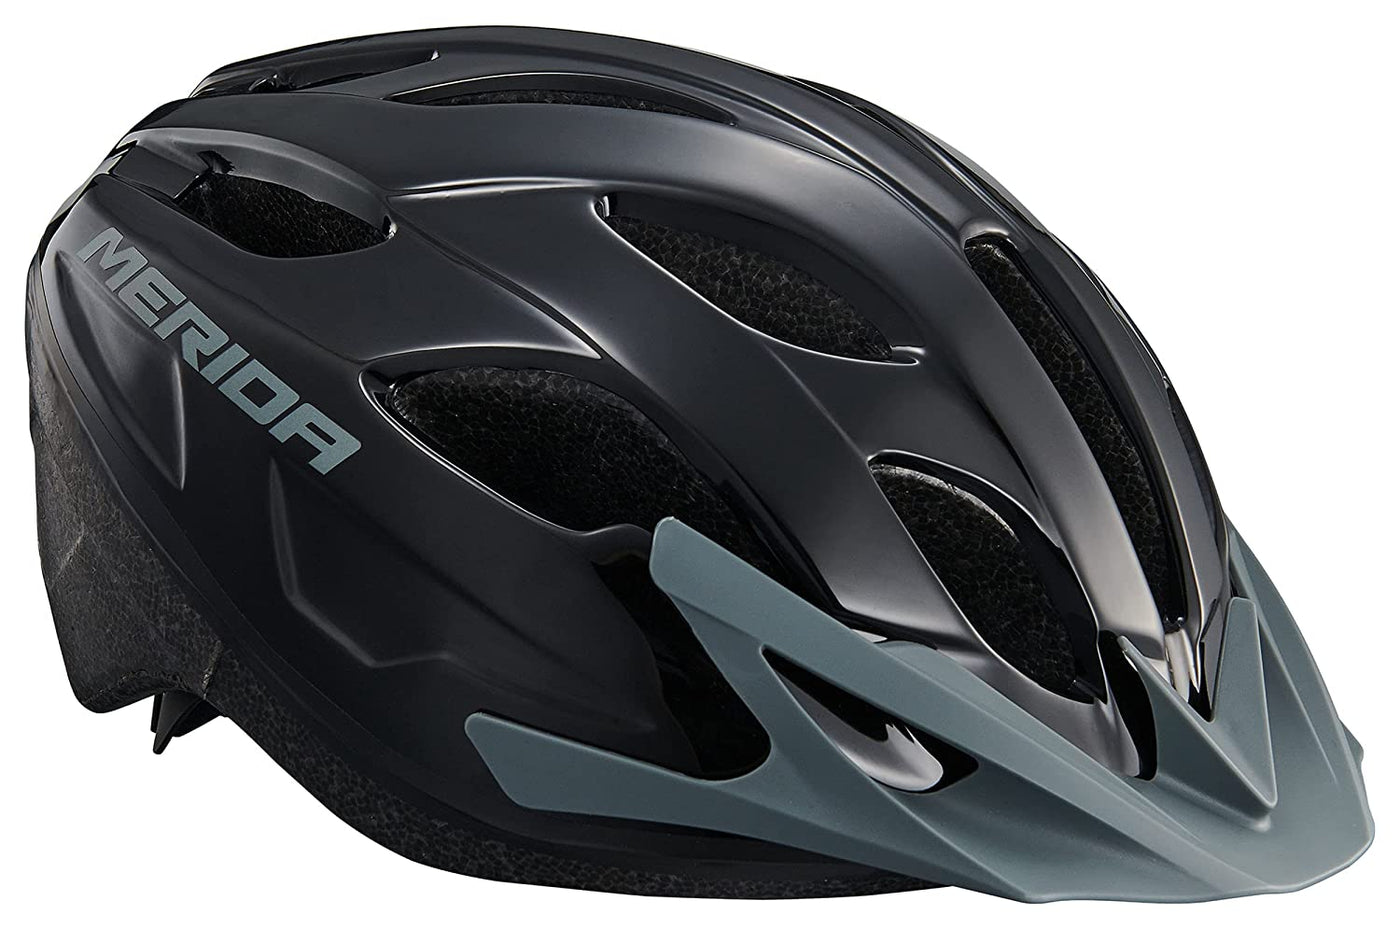 Merida RF7 One MTB Cycling Helmet Shiny Black & Grey - Cyclop.in